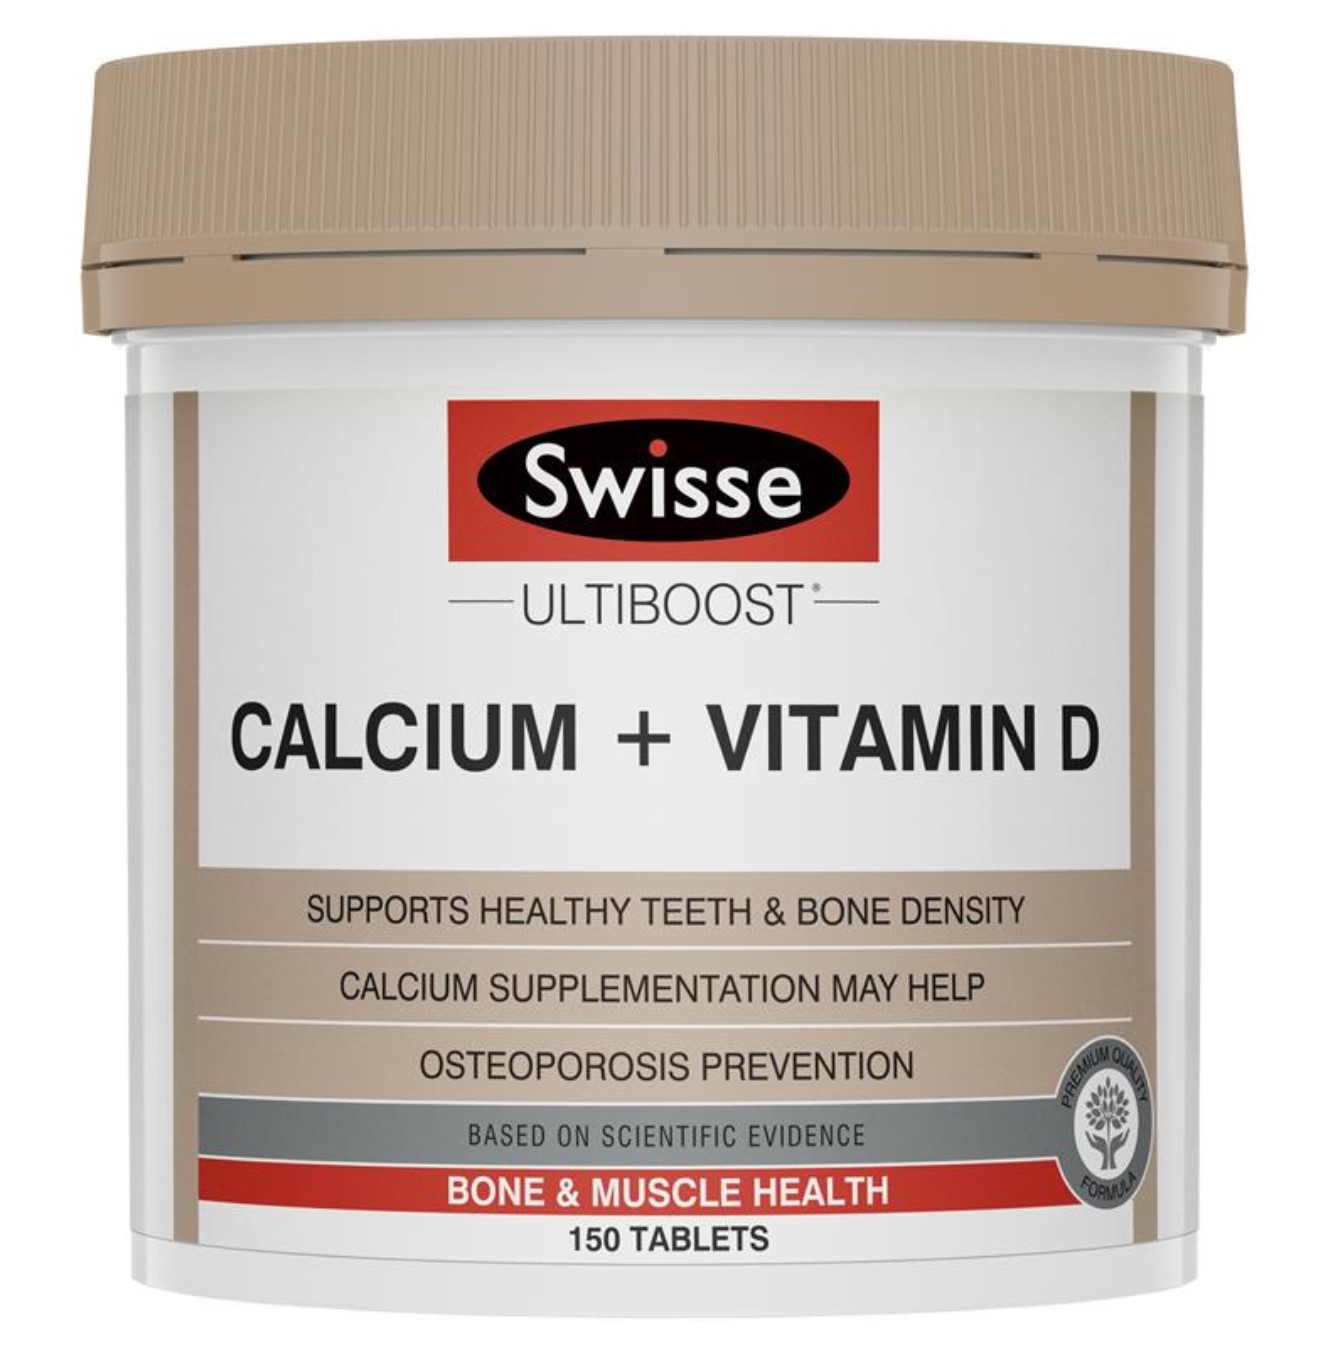 Swisse钙 calcium +VD 娘娘柠檬酸钙片成人中老年孕妇补钙 150片